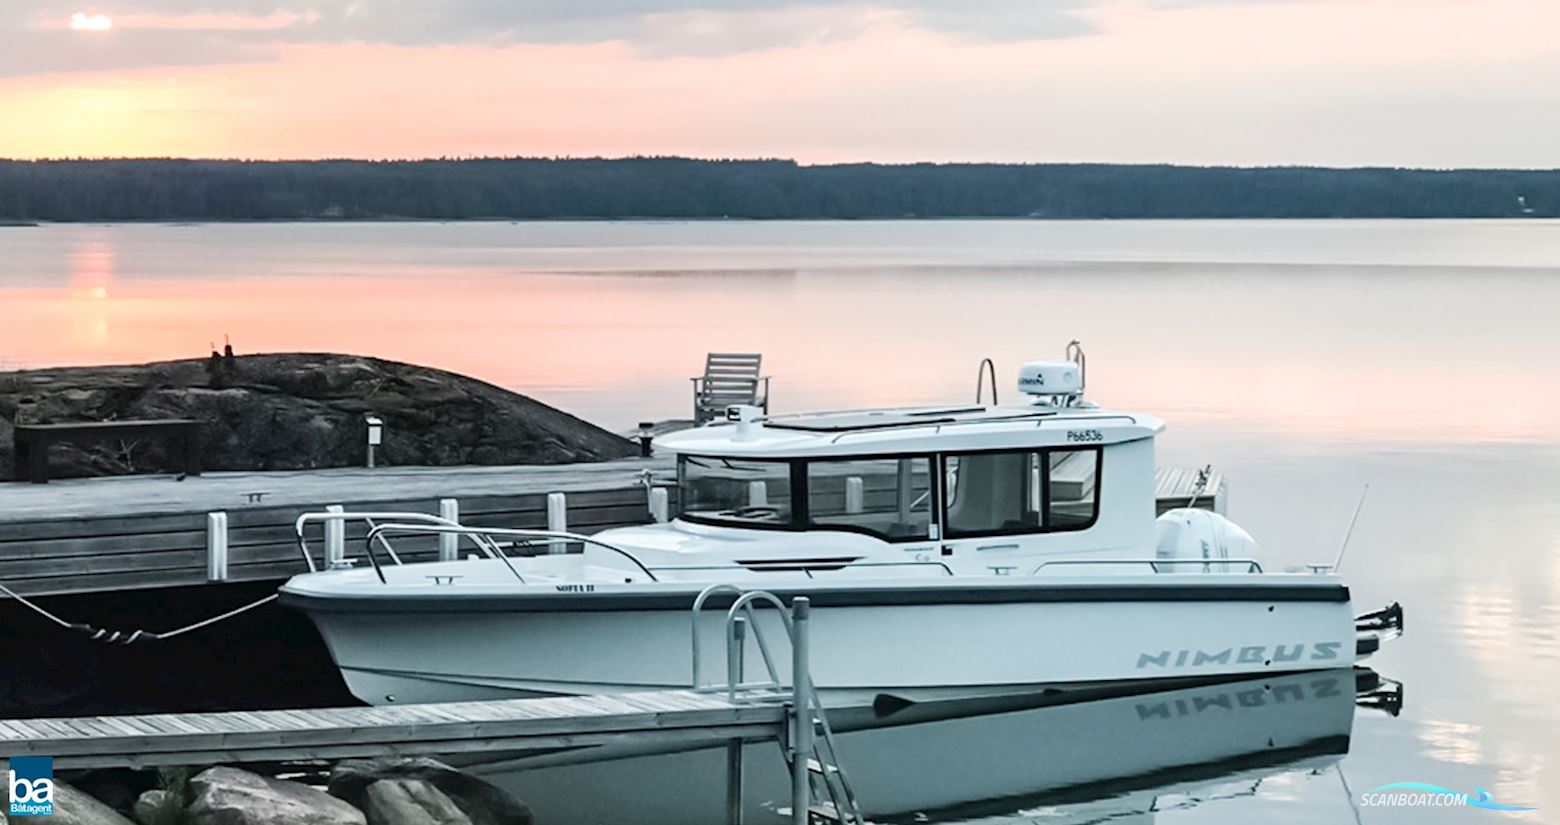 Nimbus C9 Motorbåt 2019, med Mercury Verado motor, Finland